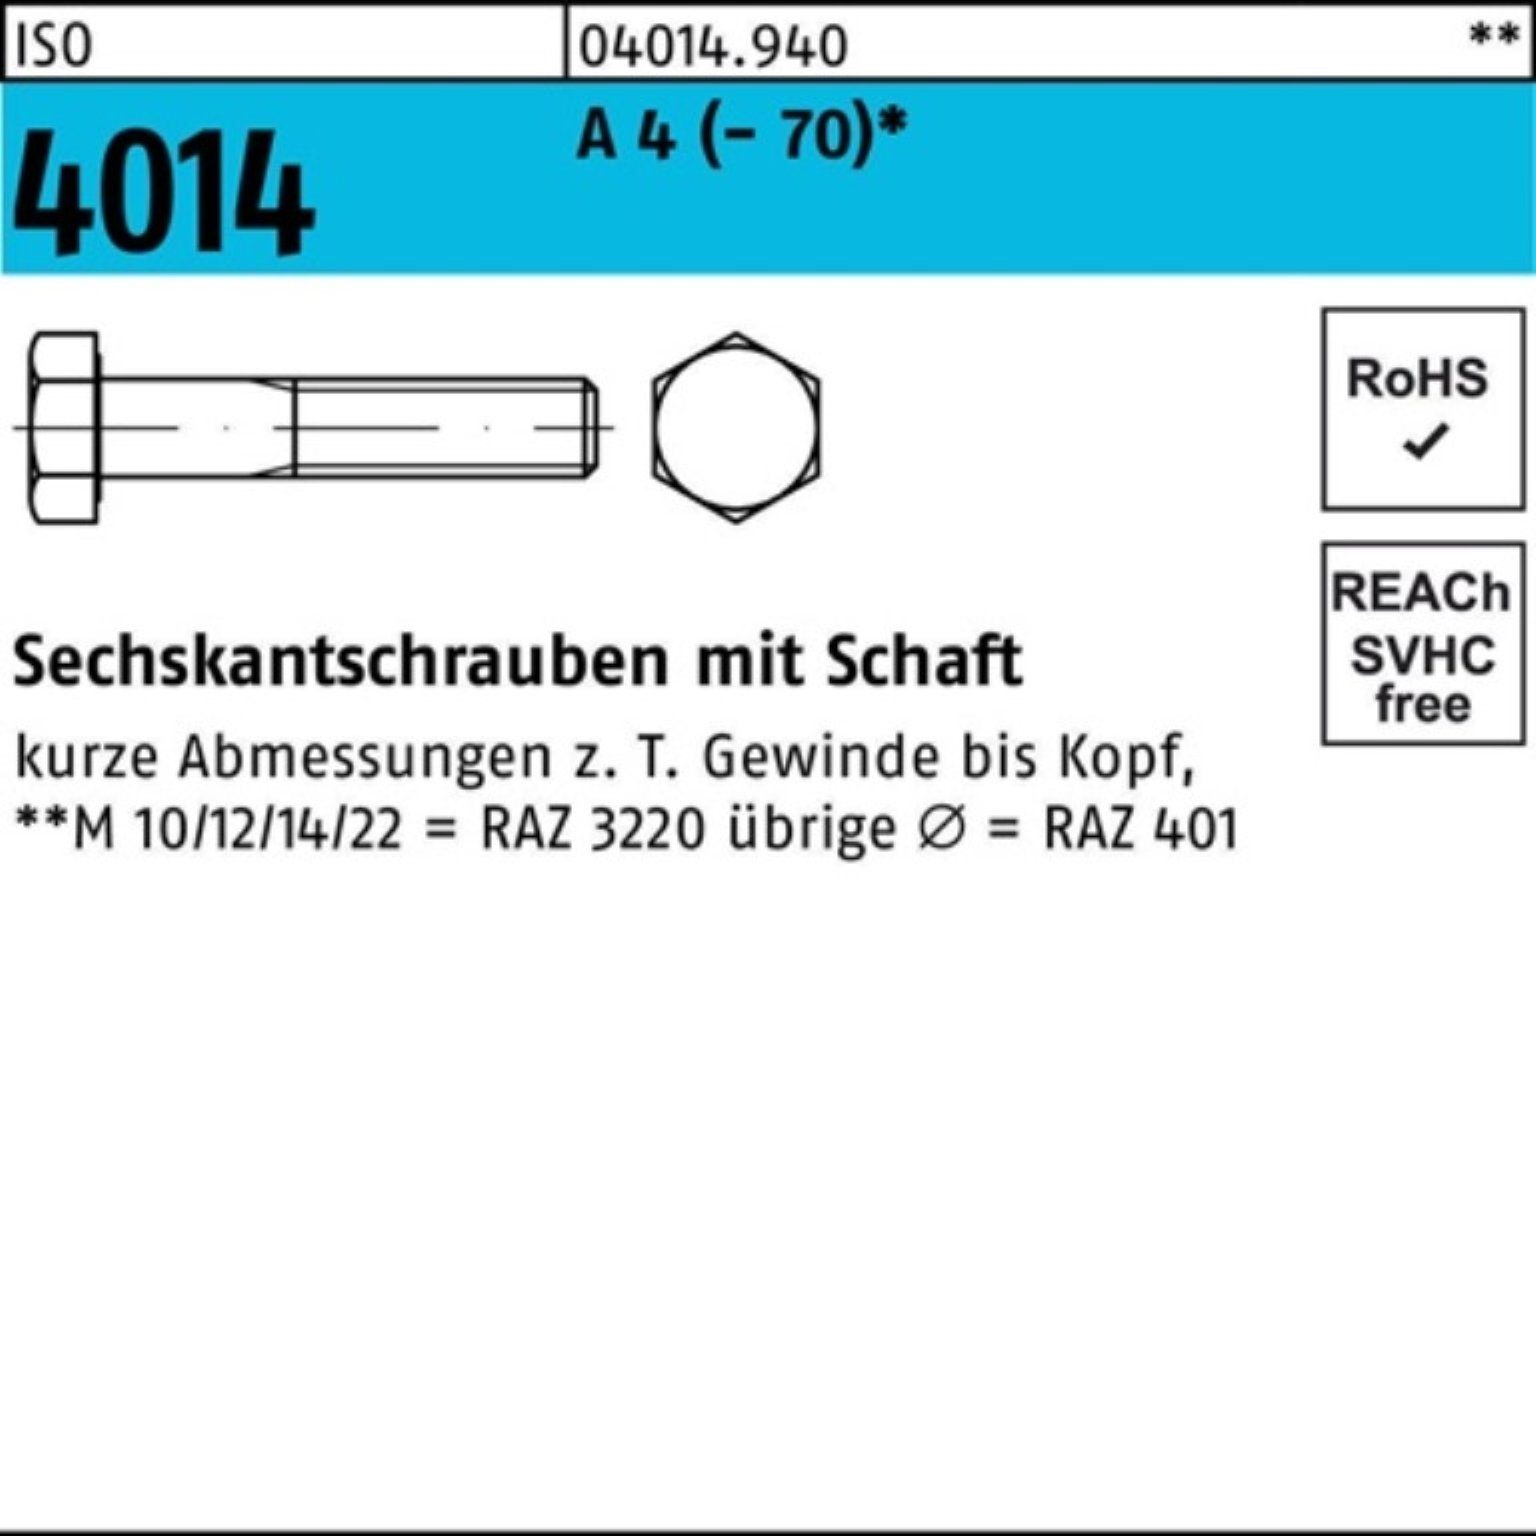 ISO (70) Sechskantschraube 4014 70 M22x St Sechskantschraube Schaft A Bufab 4 Pack 100er 10